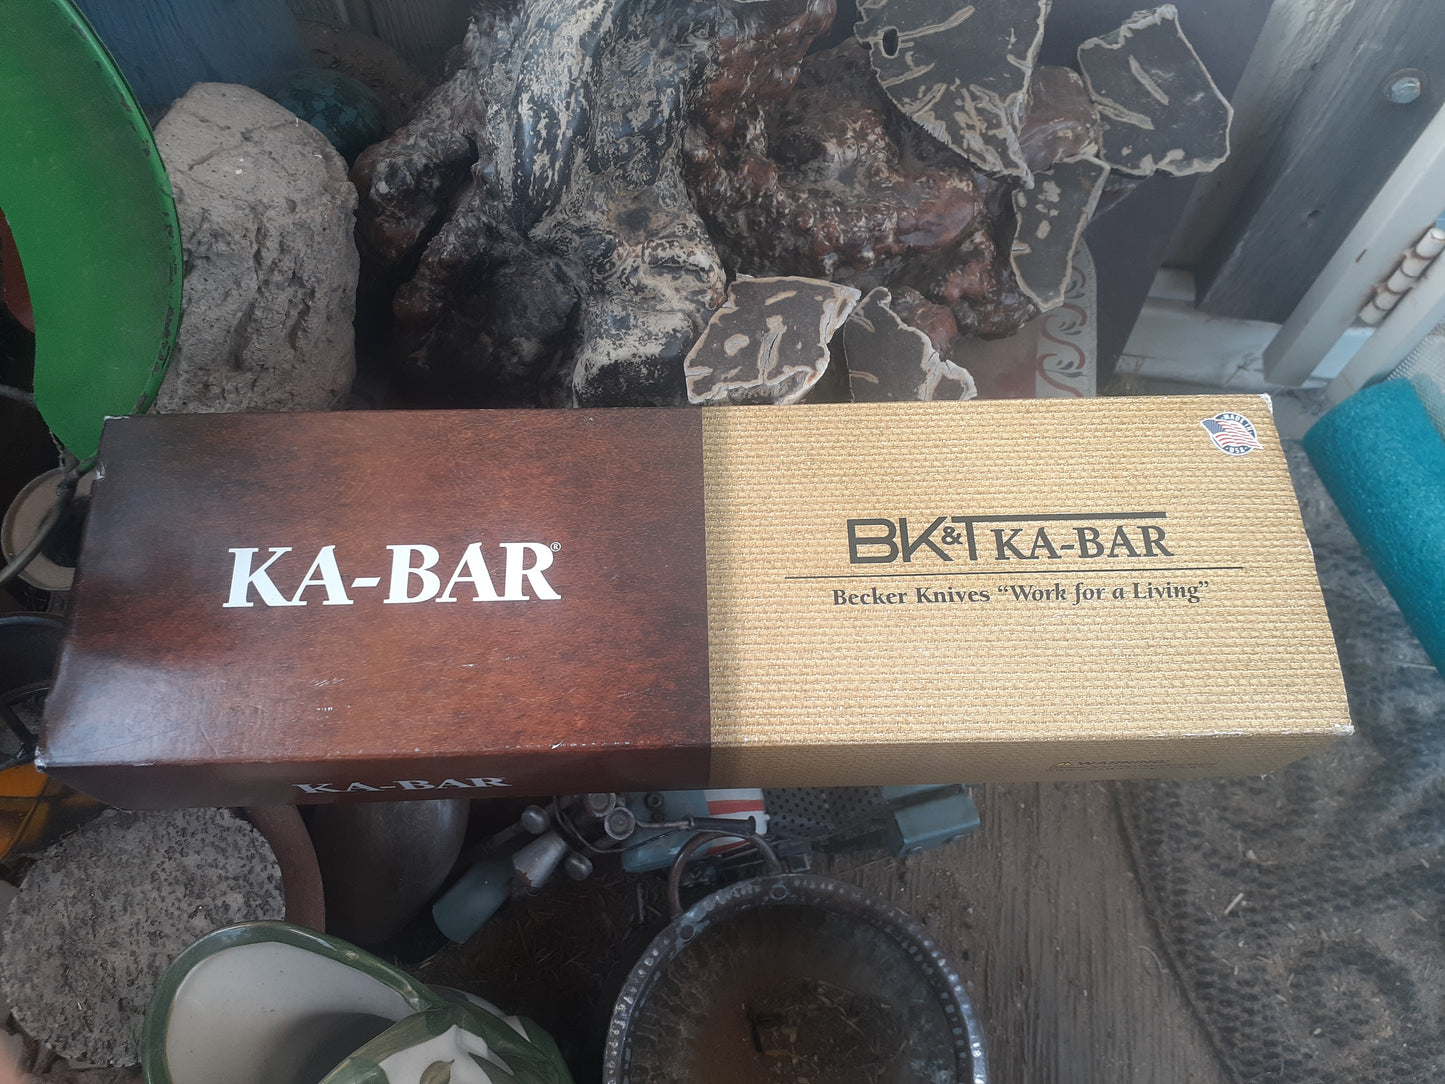 BK&KA-BAR BK9 Sheath Knife